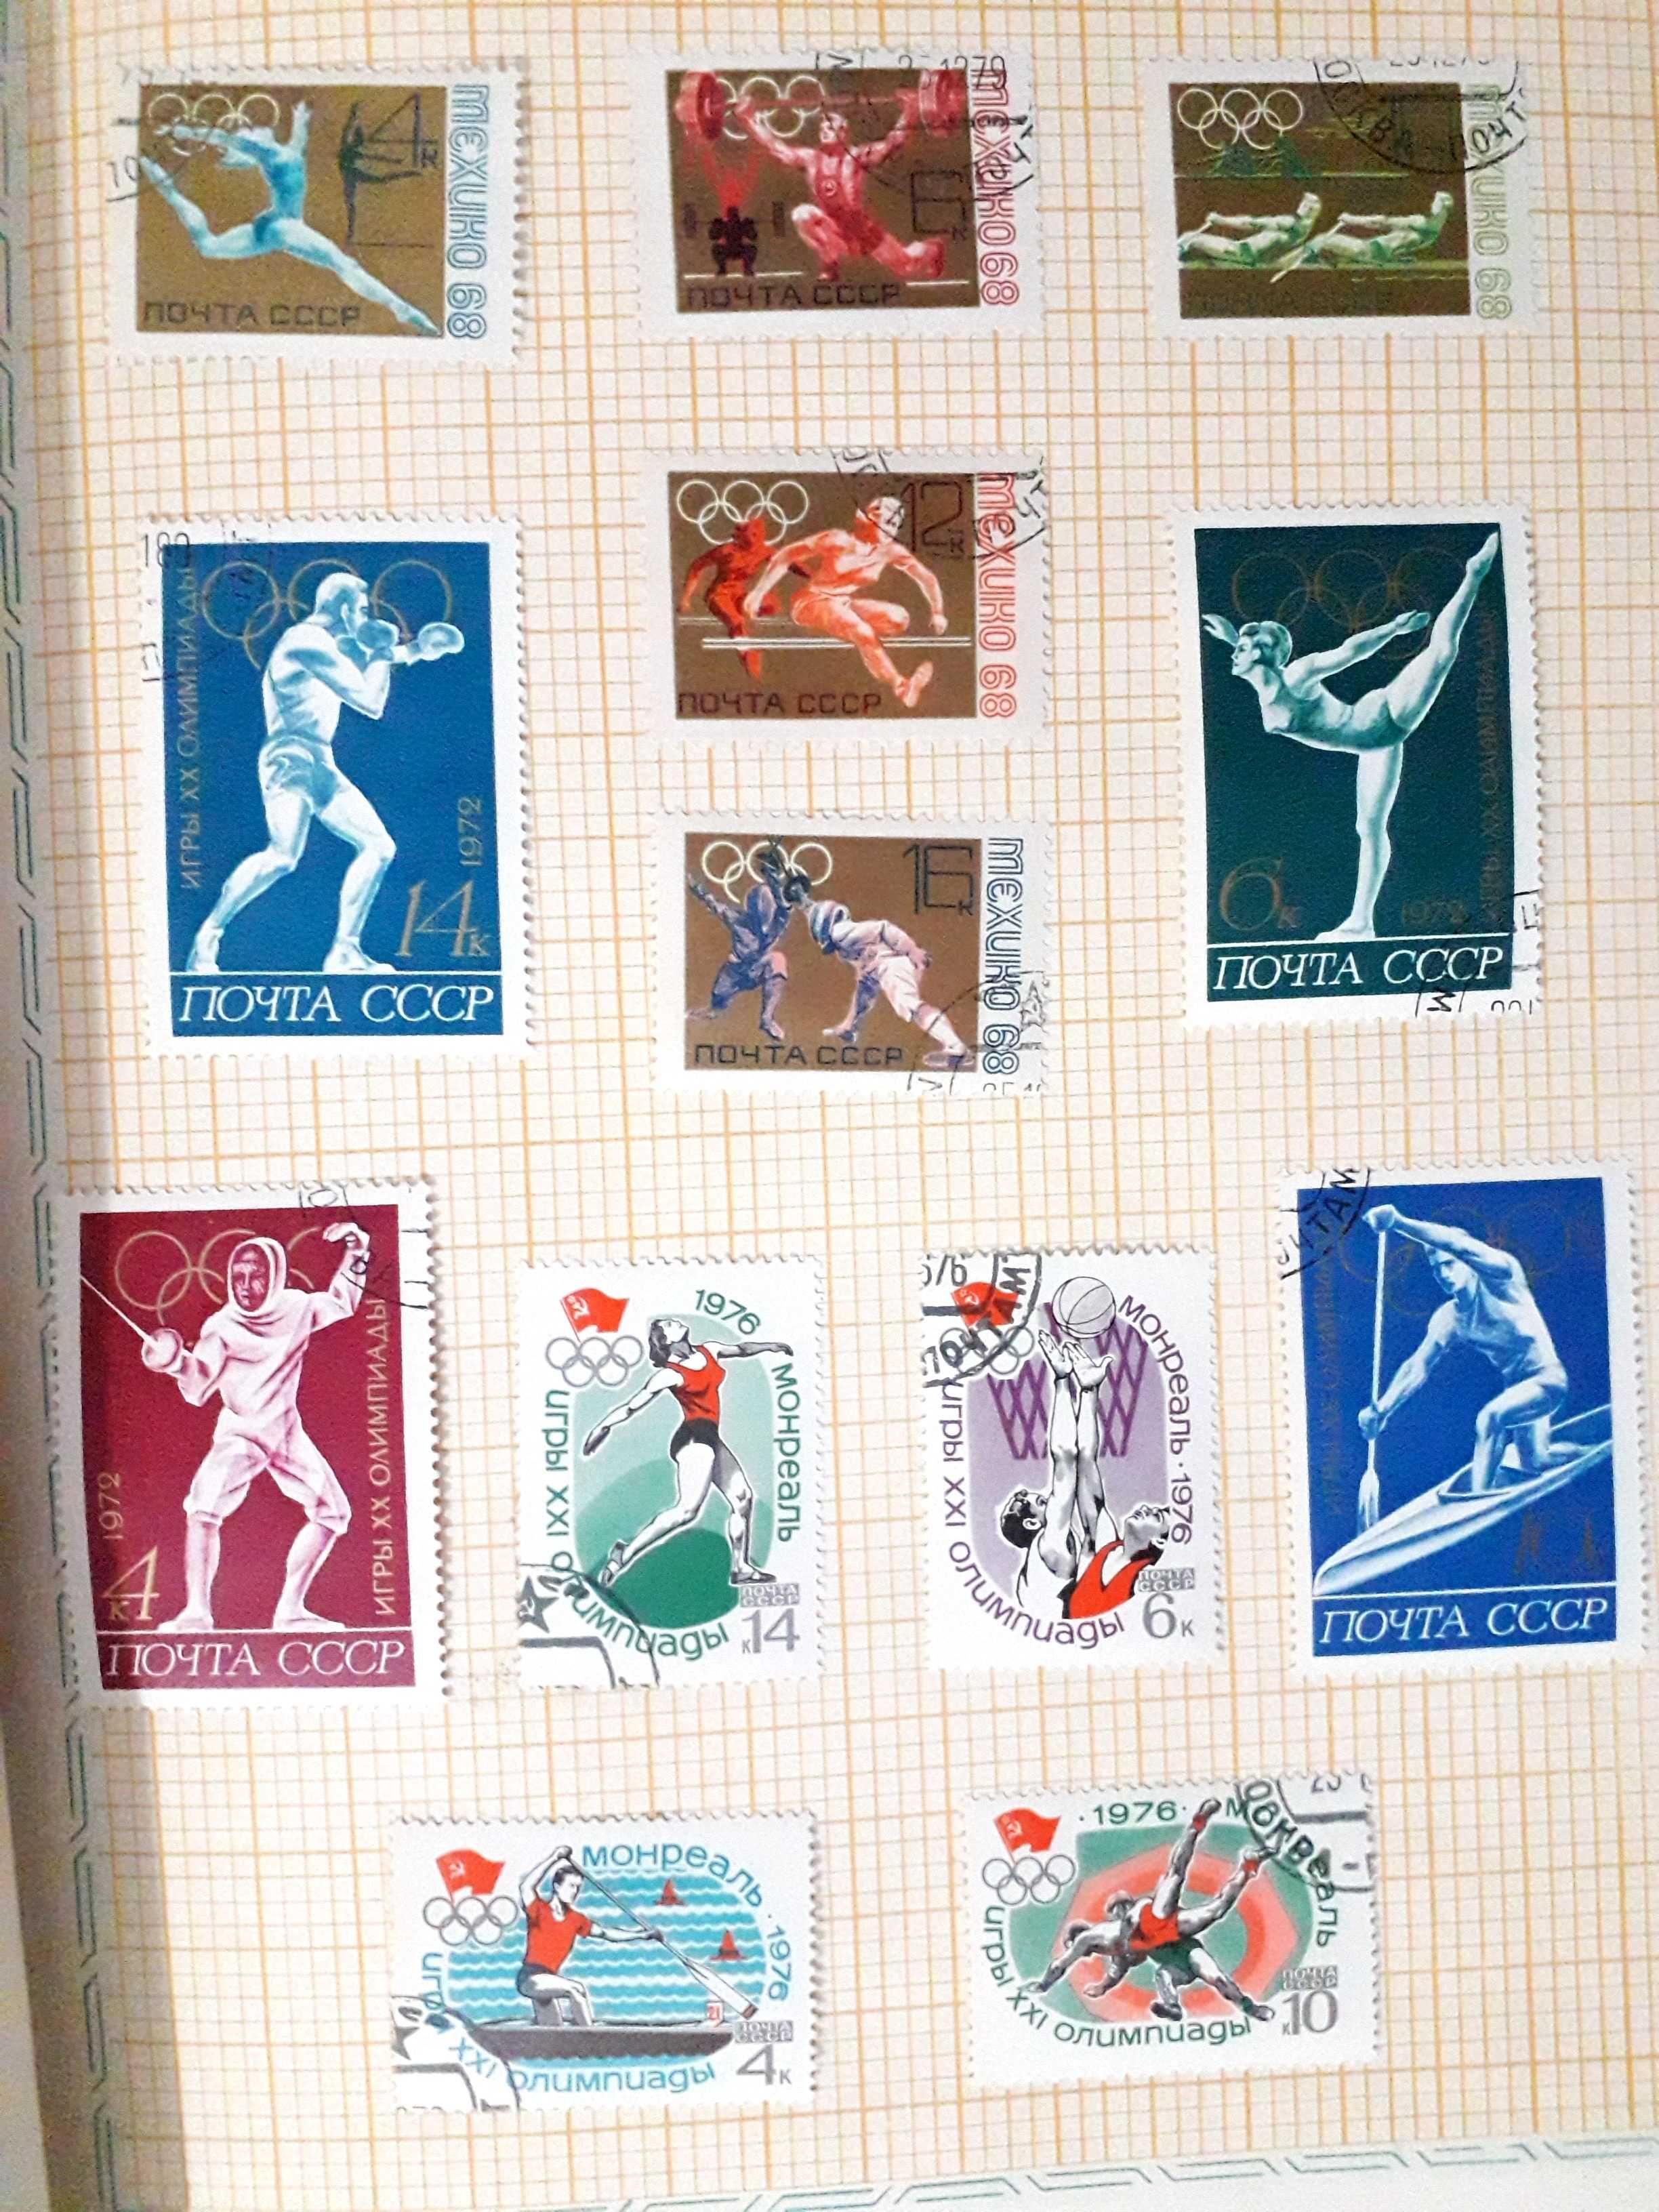 Colecção de 60 selos antigos temática "Jogos Olímpicos" da ex. URSS